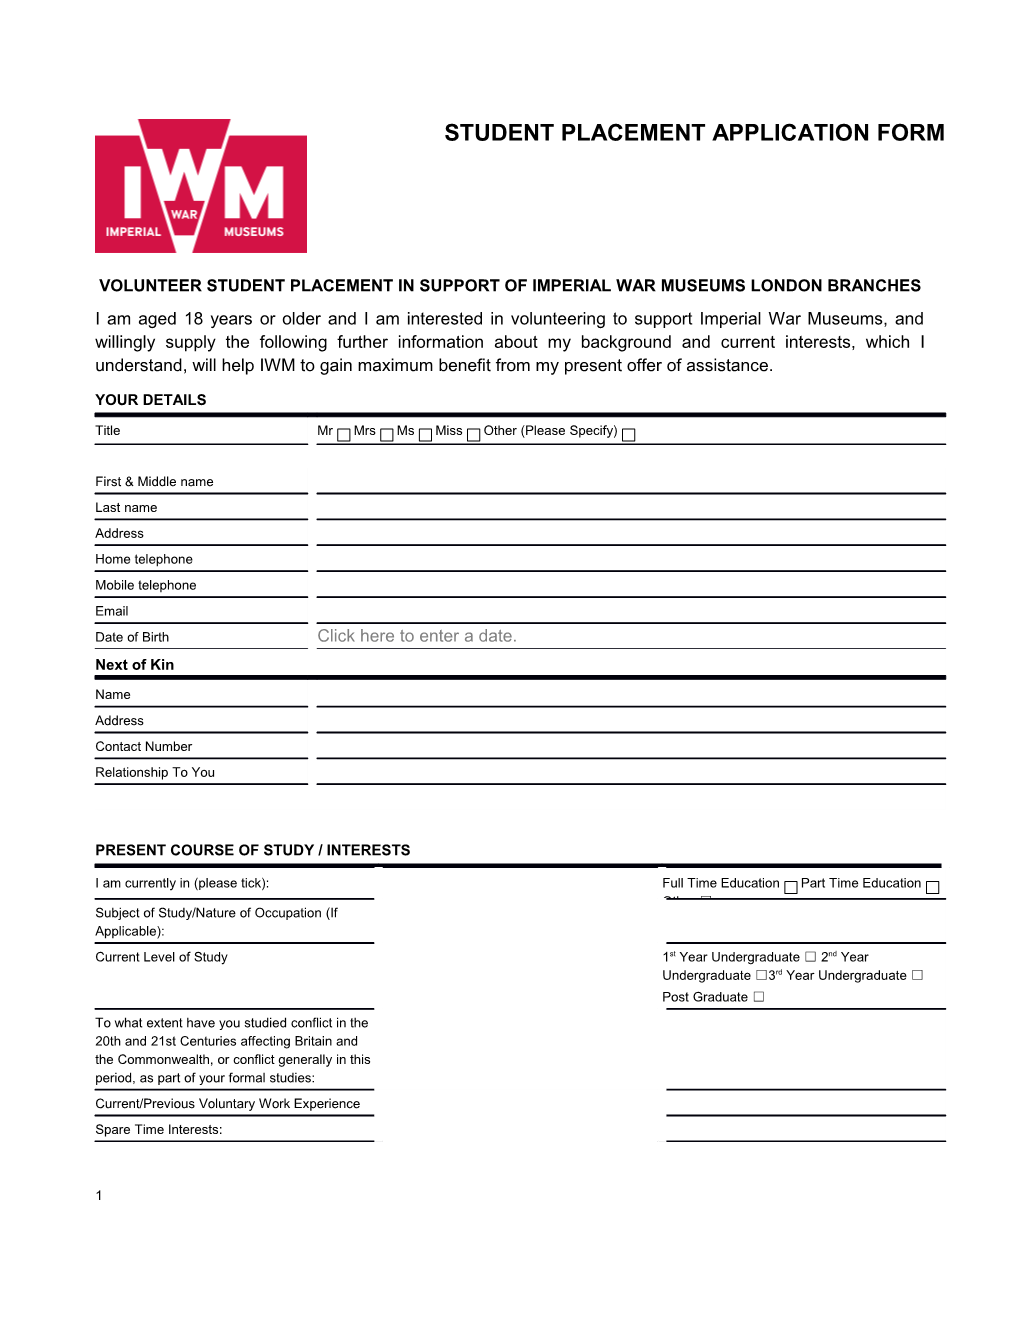 IWM Application Form